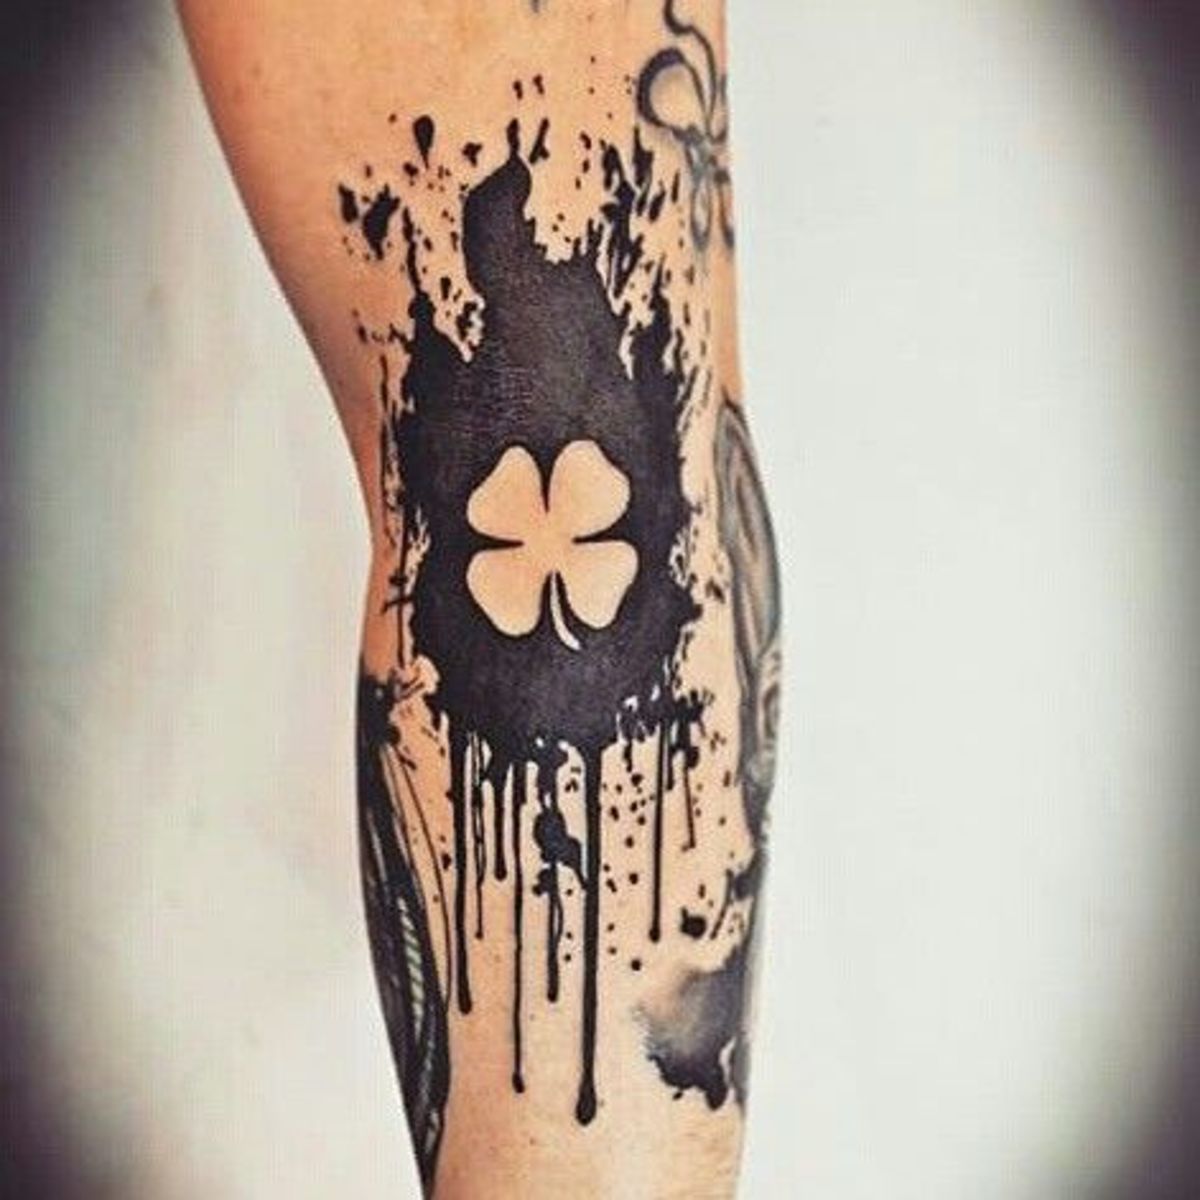 Irské tetování, keltské tetování, tetování čtyřlístků, den svatého Patrika, tetování na den svatého Patrika, tetování claddagh, tetování vlka, irské tetování, tetování skřítka, galské tetování, INKED